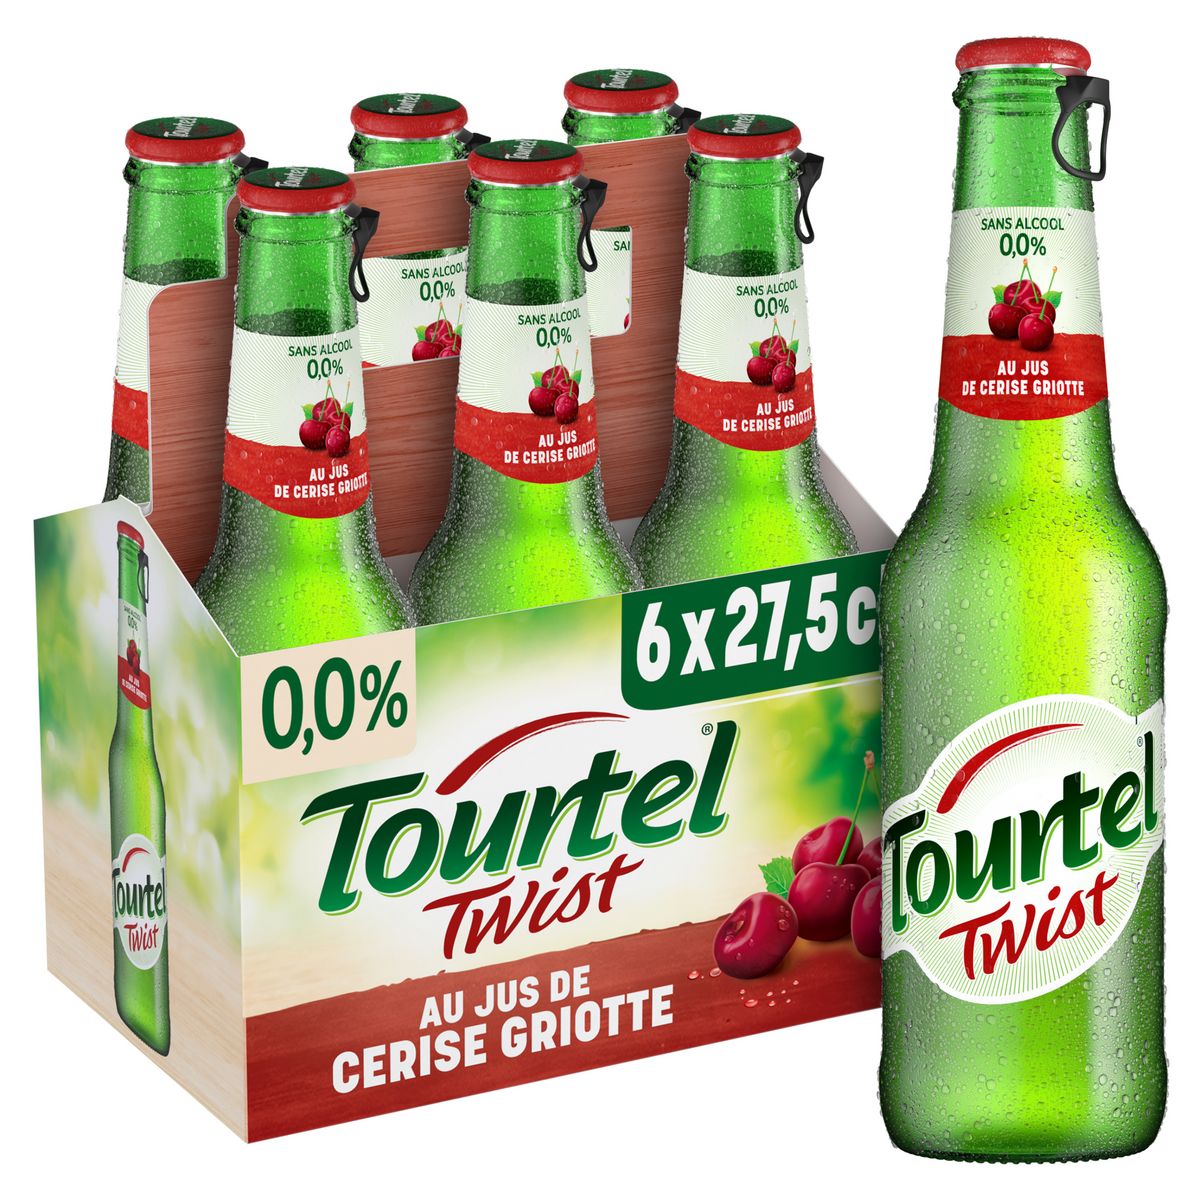 TOURTEL Bière Twist sans alcool 0,0% aromatisée à la cerise griotte bouteilles 6x27,5cl